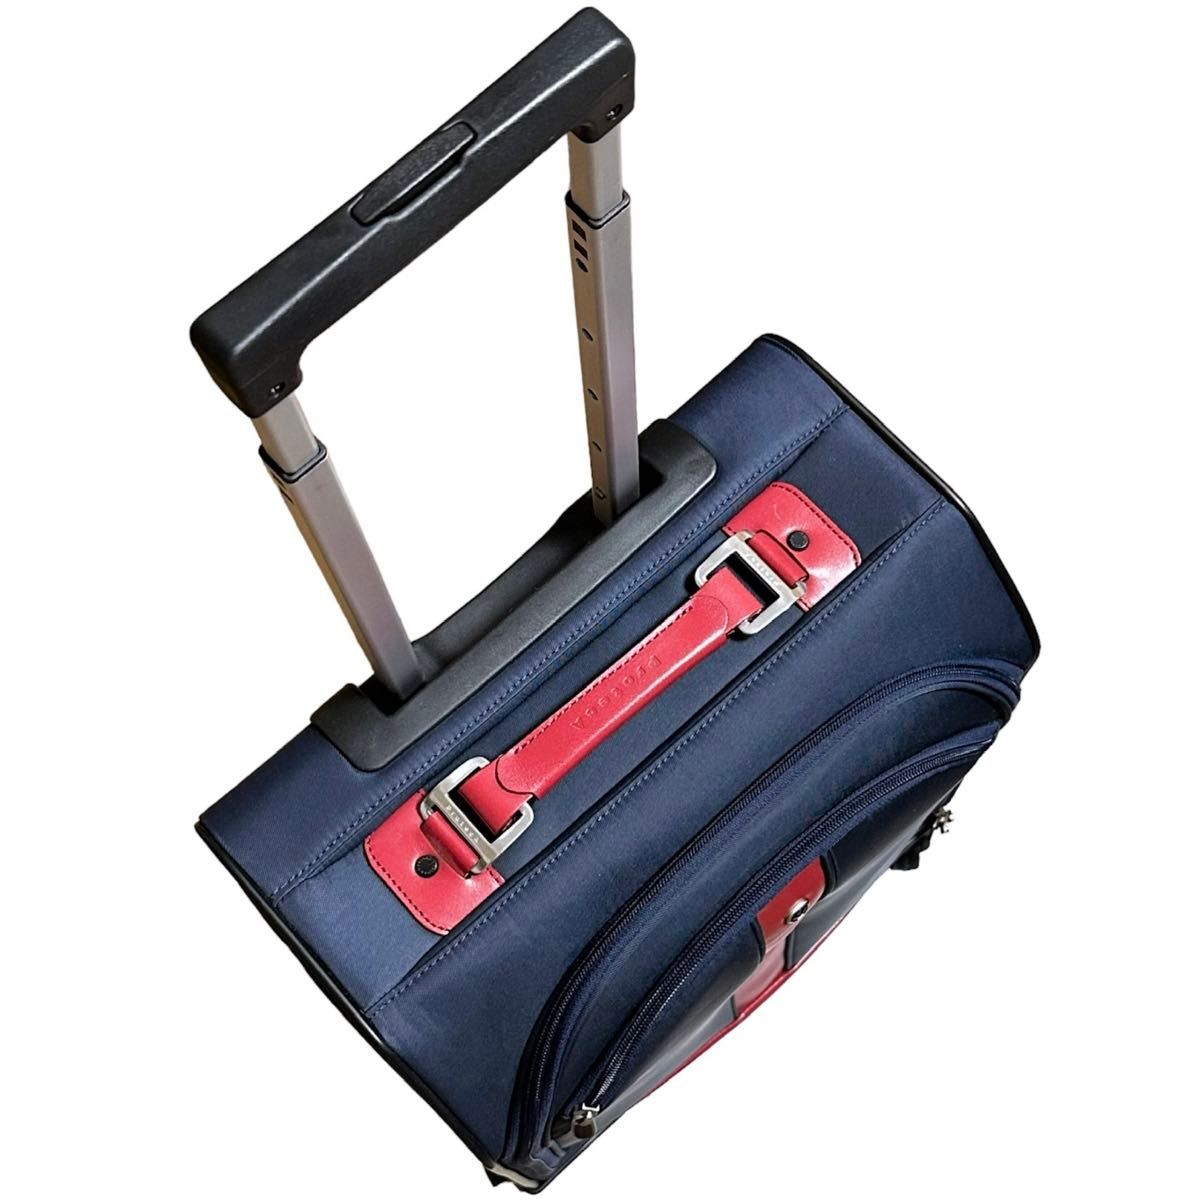 PROTECA プロテカ ソフトキャリーケース スーツケース 旅行バッグ ビジネス 出張 機内持ち込み可 四輪 ネイビー×レッド